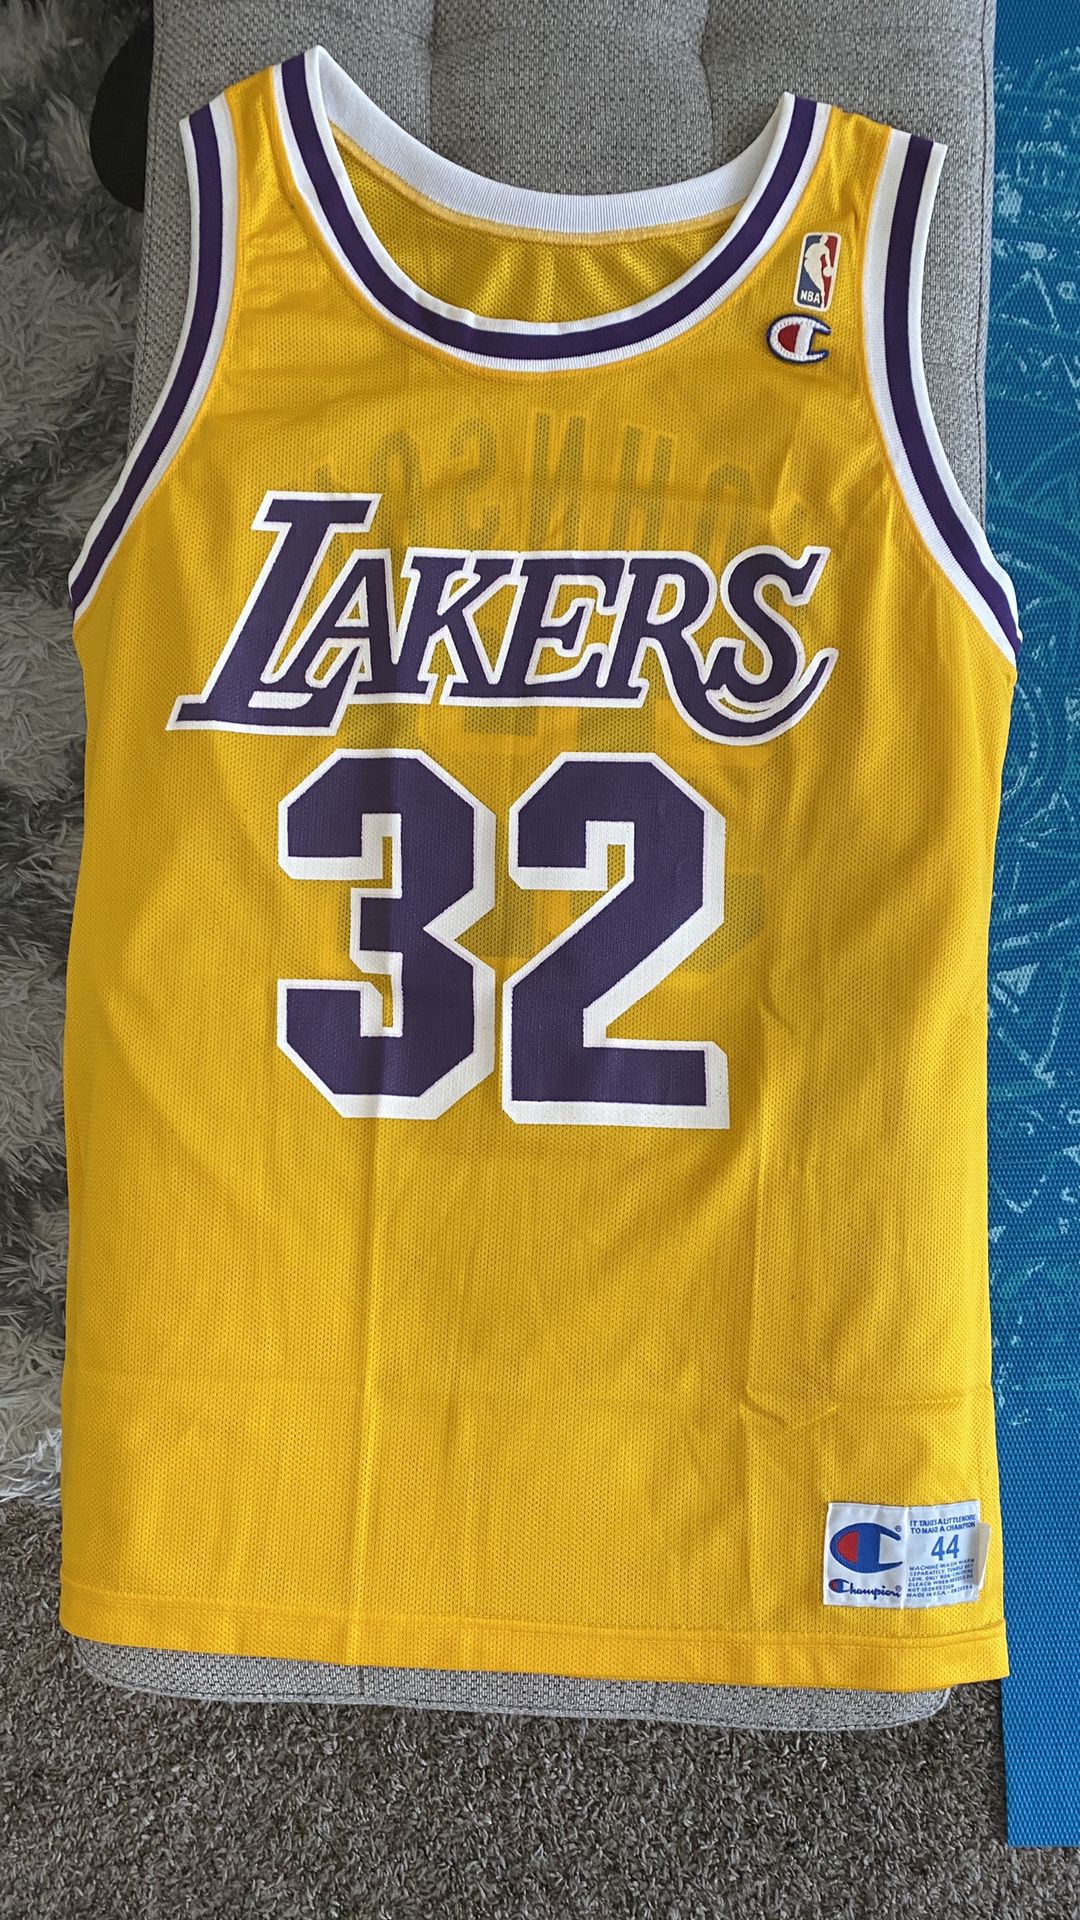 Magic Johnson - LA Lakers Champion Jersey (Large)